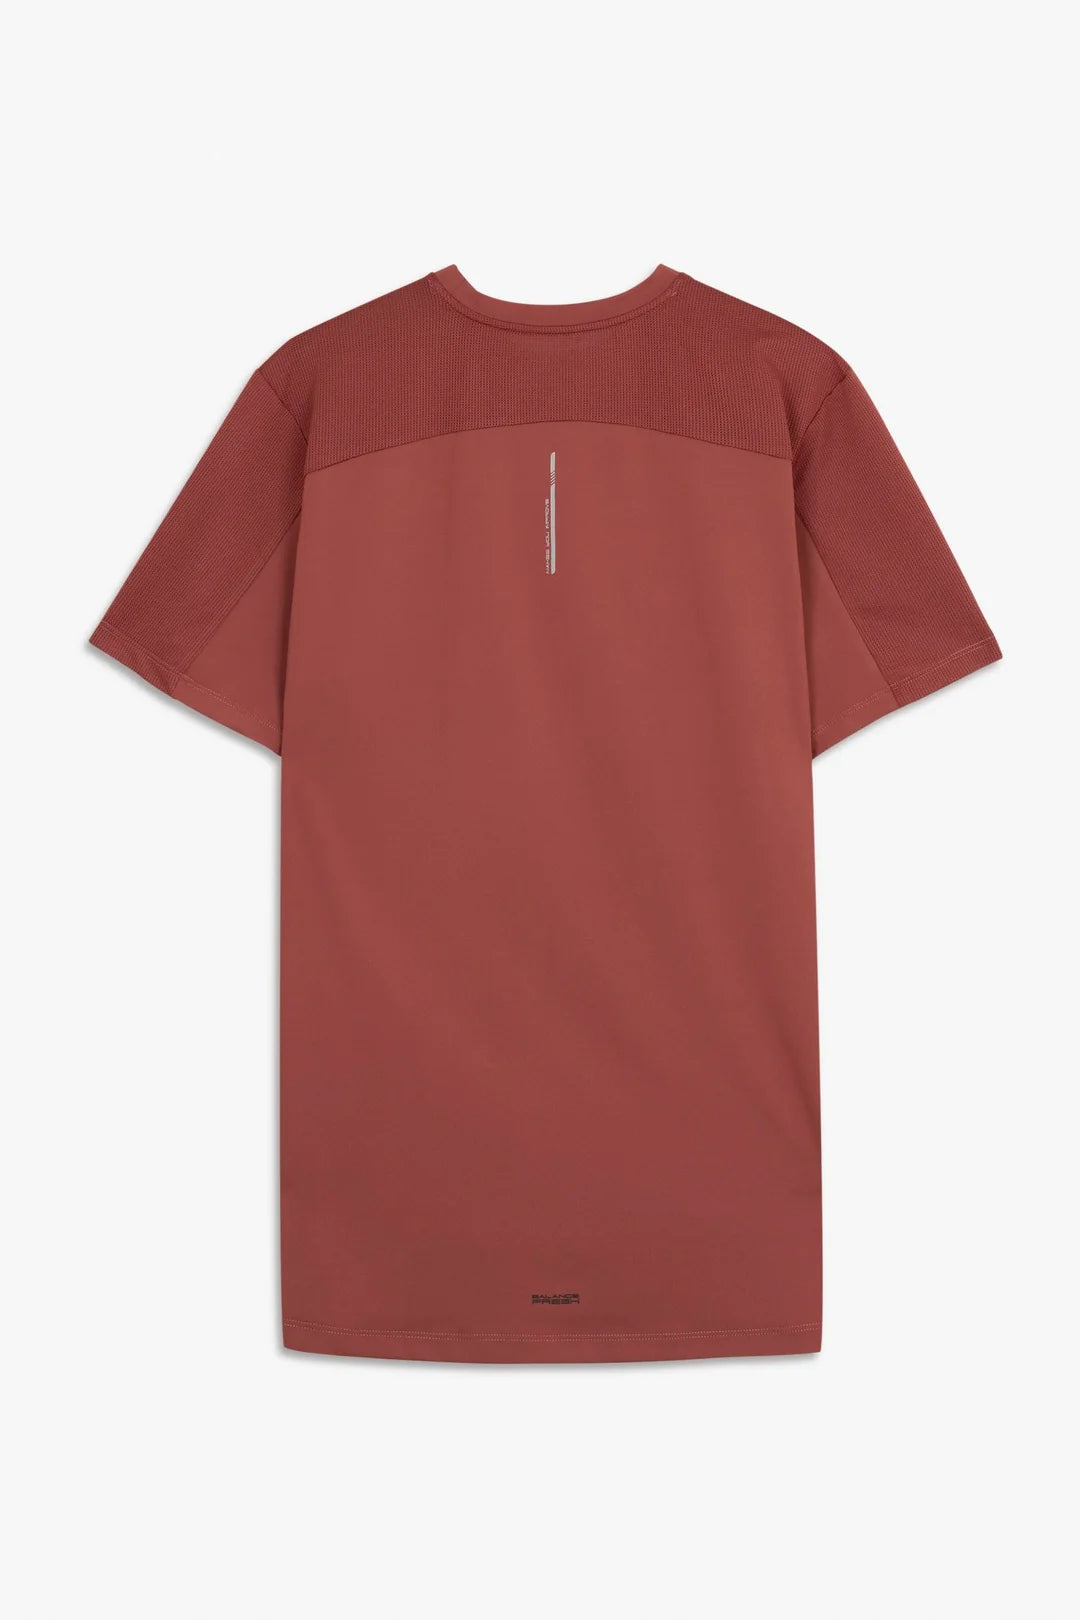 NOX Pro Fit  Shirt - Herren - maroon rot